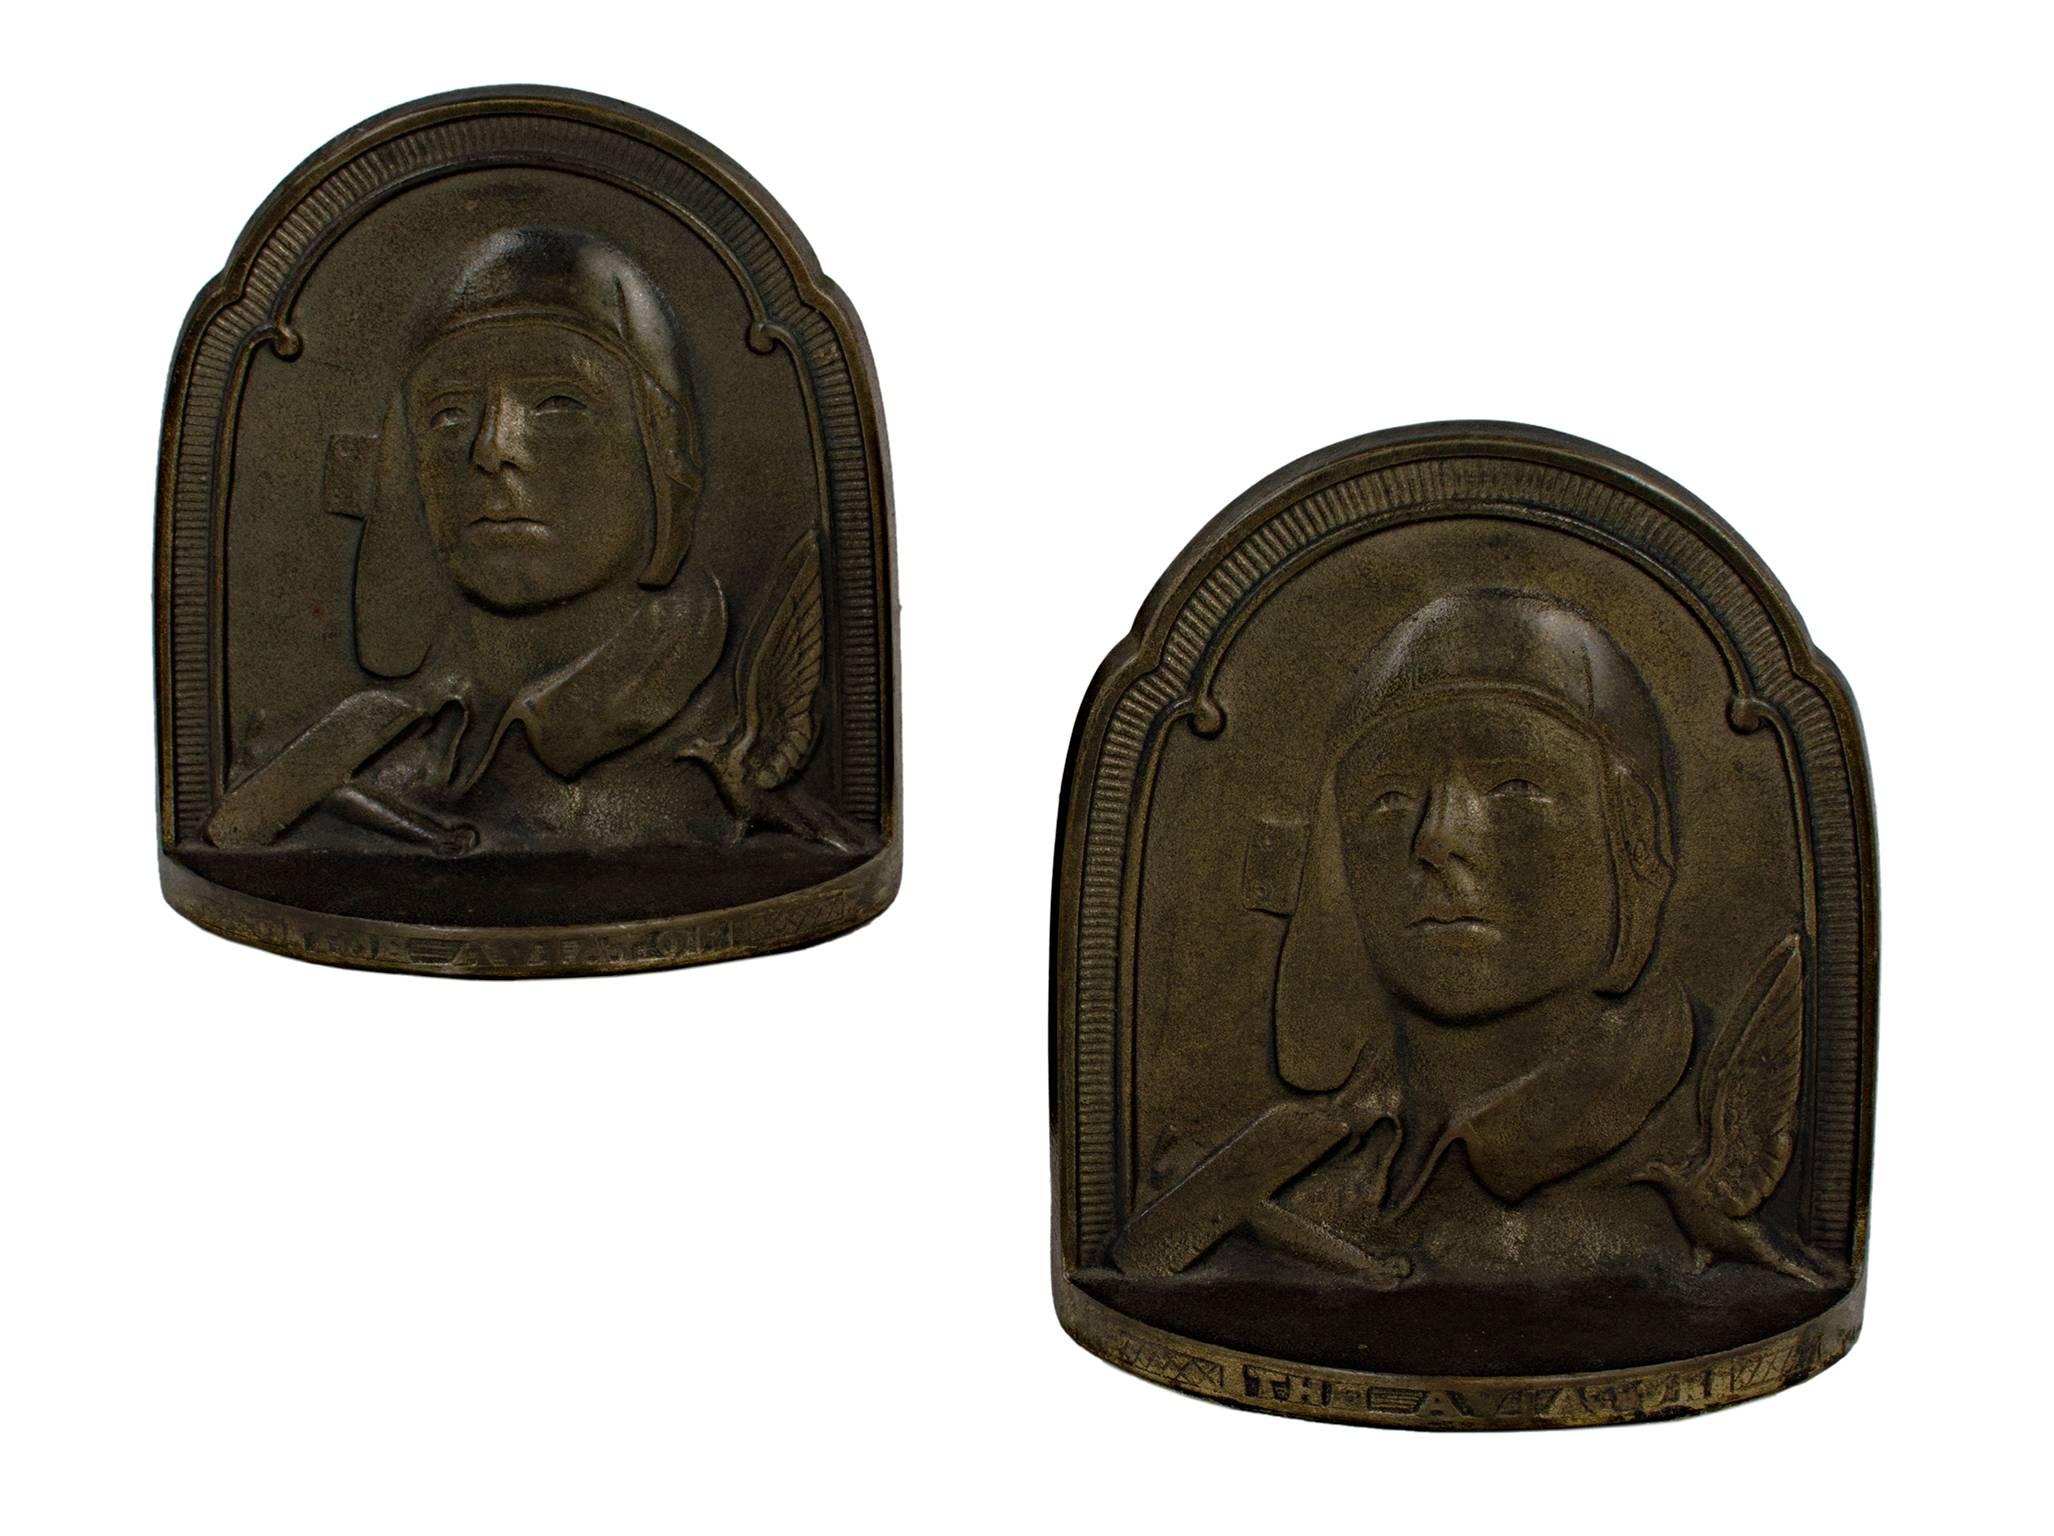 Diese Buchenden aus Bronzeguss wurden von einem unbekannten Künstler geschaffen. Sie stellen den amerikanischen Flieger, Militäroffizier, Autor, Erfinder, Entdecker und Umweltaktivisten Charles Lindbergh dar.

Abmessungen: 5 1/2" x 5" x 1 3/4"